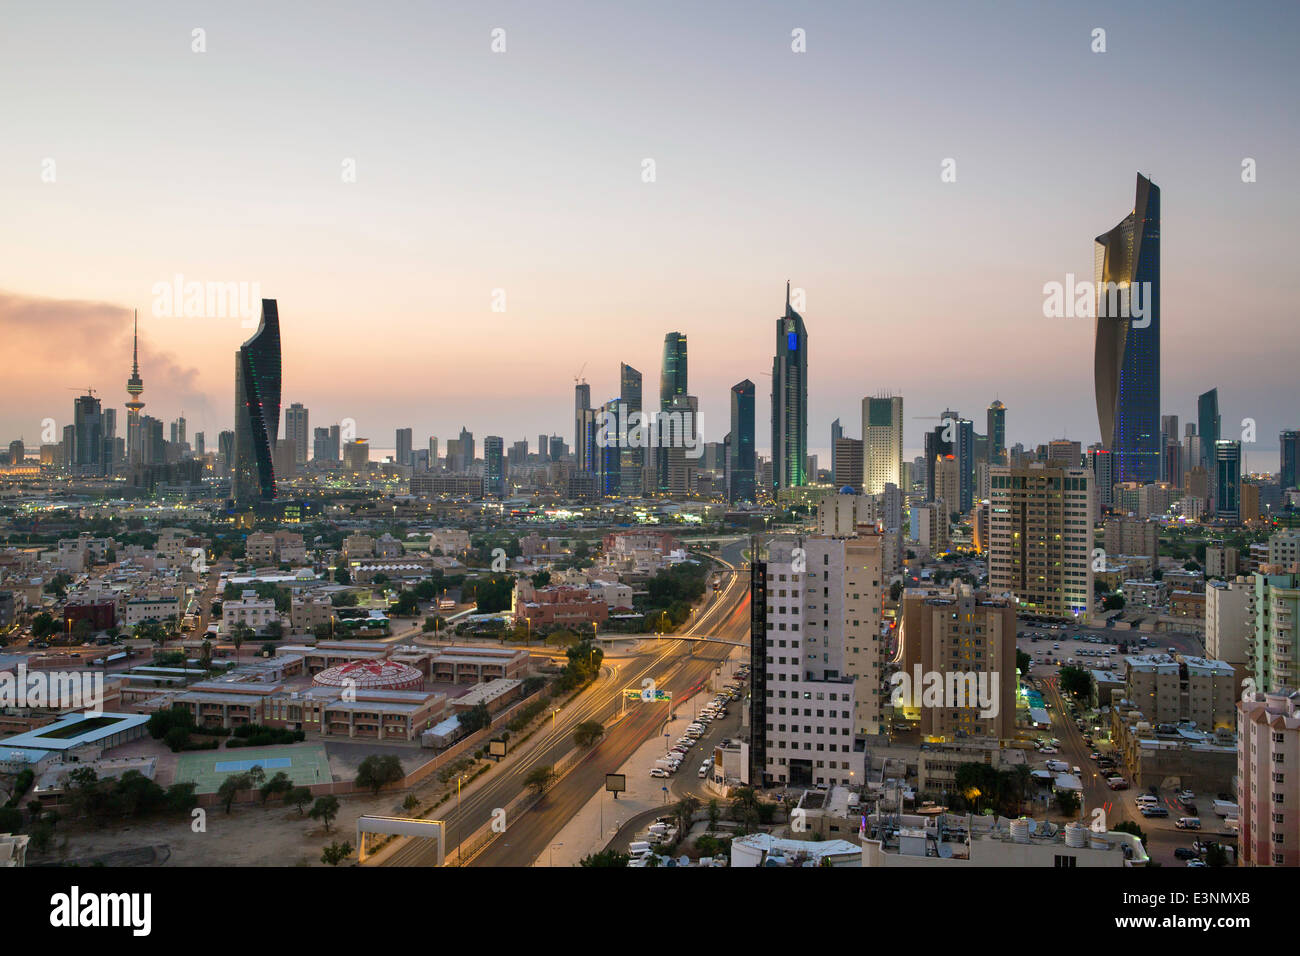 Le Koweït, ville moderne et central Business district, elevated view Banque D'Images